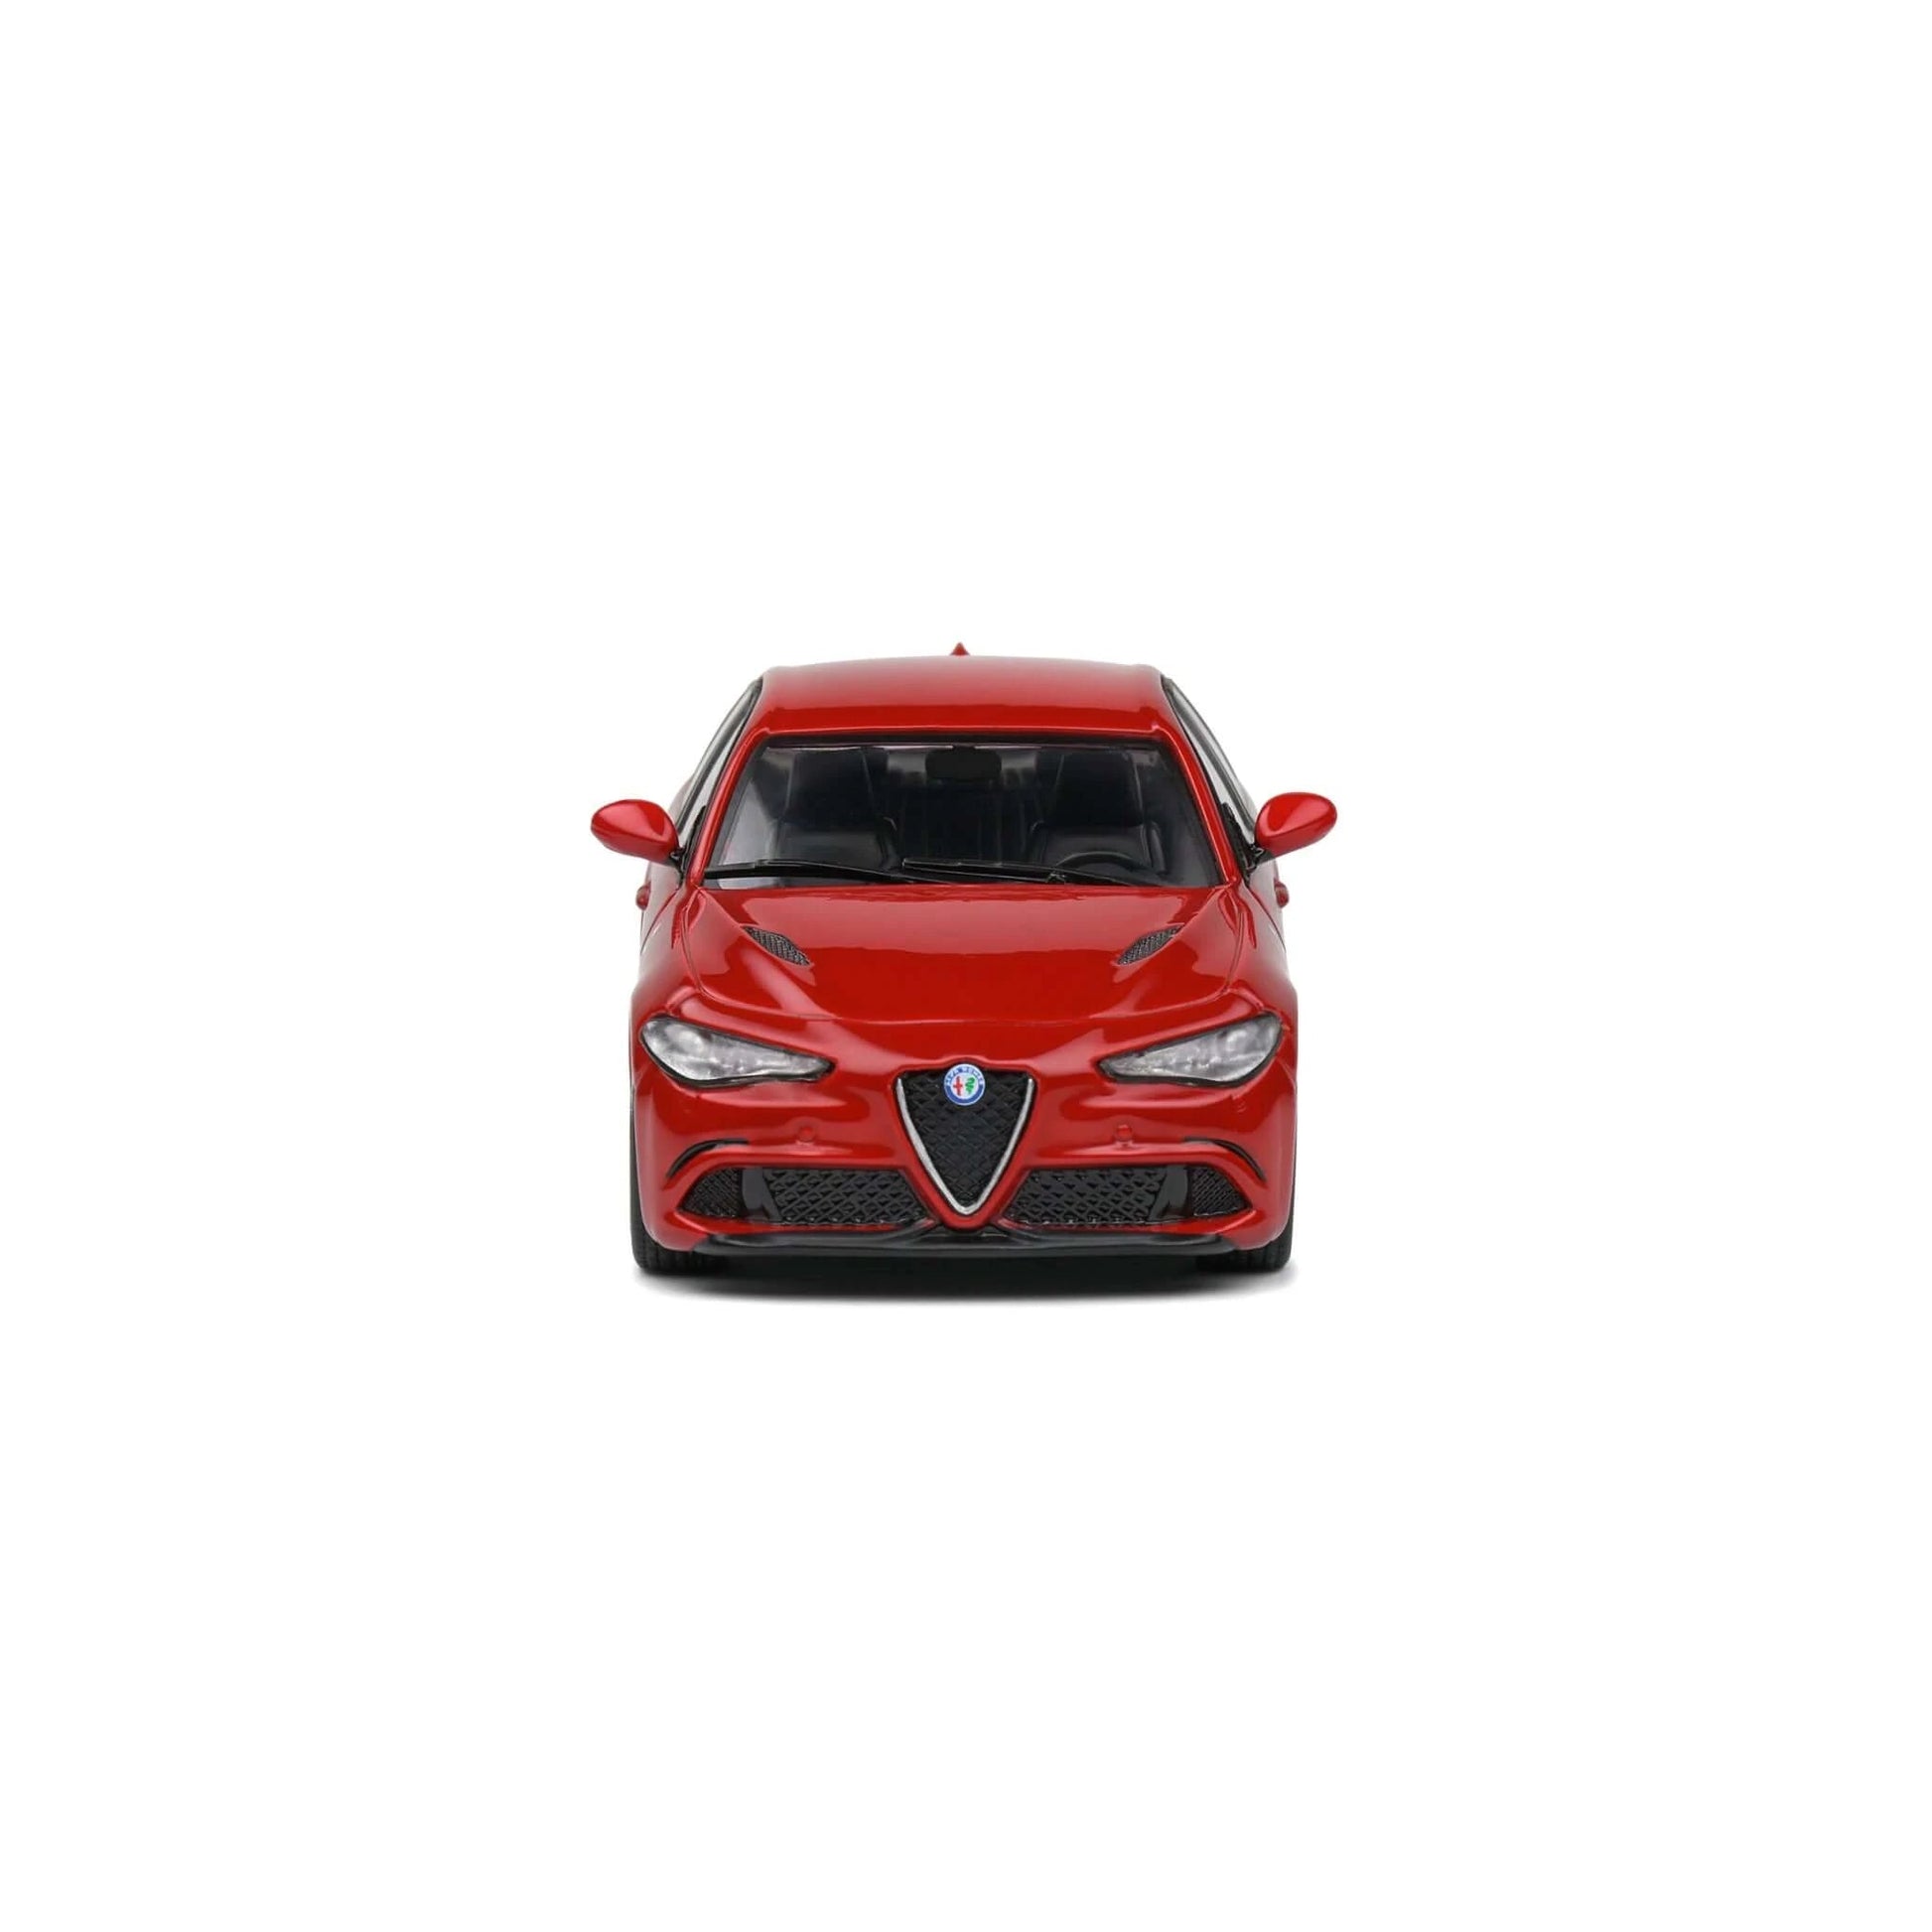 Alfa Romeo Giulia Quadrifoglio 2.9L Bi-Turbo 2019 Rouge Solido 1/43 - S4313103